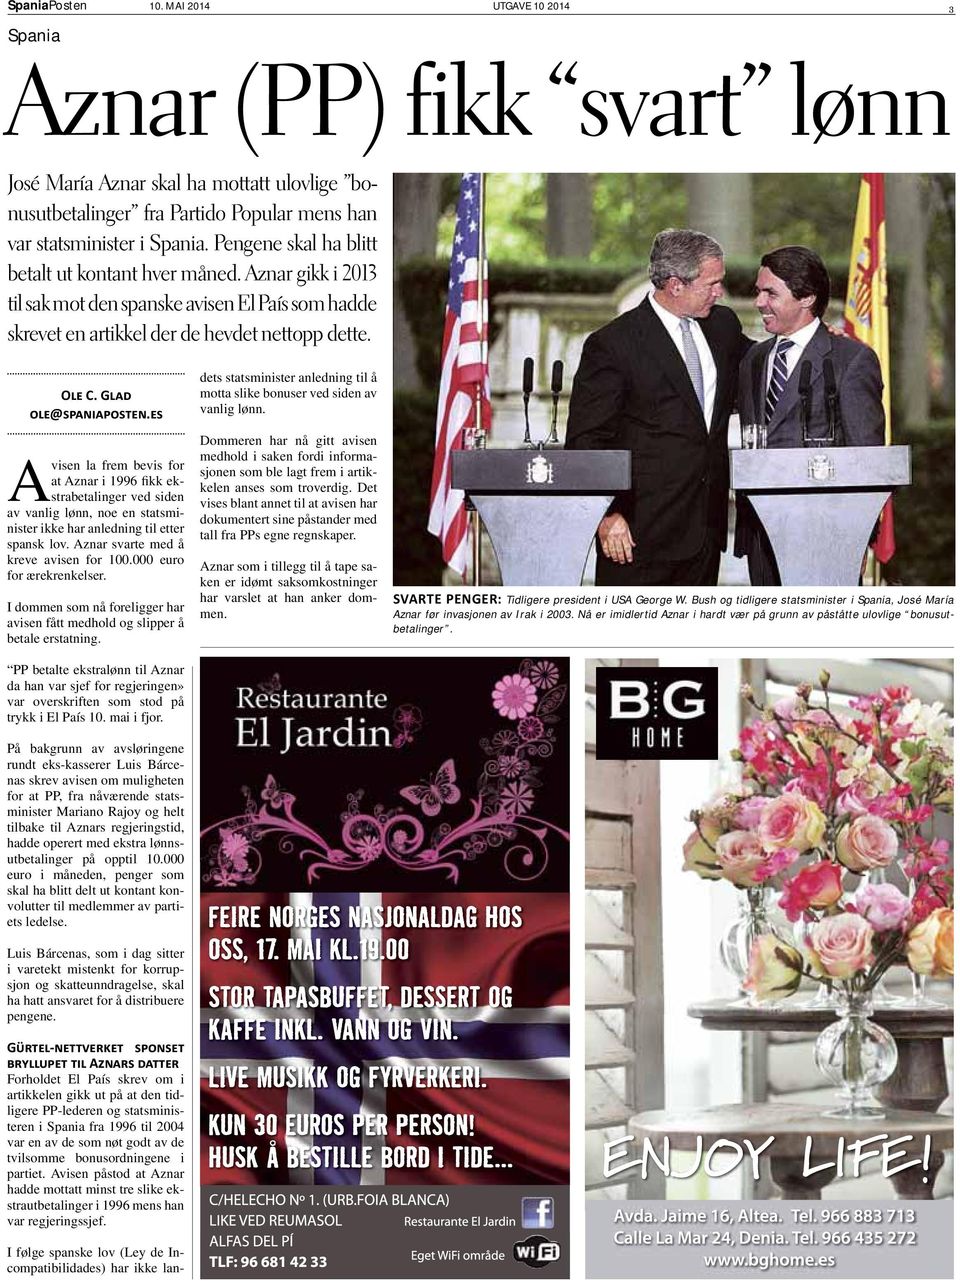 Avisen la frem bevis for at Aznar i 1996 fikk ekstrabetalinger ved siden av vanlig lønn, noe en statsminister ikke har anledning til etter spansk lov. Aznar svarte med å kreve avisen for 100.